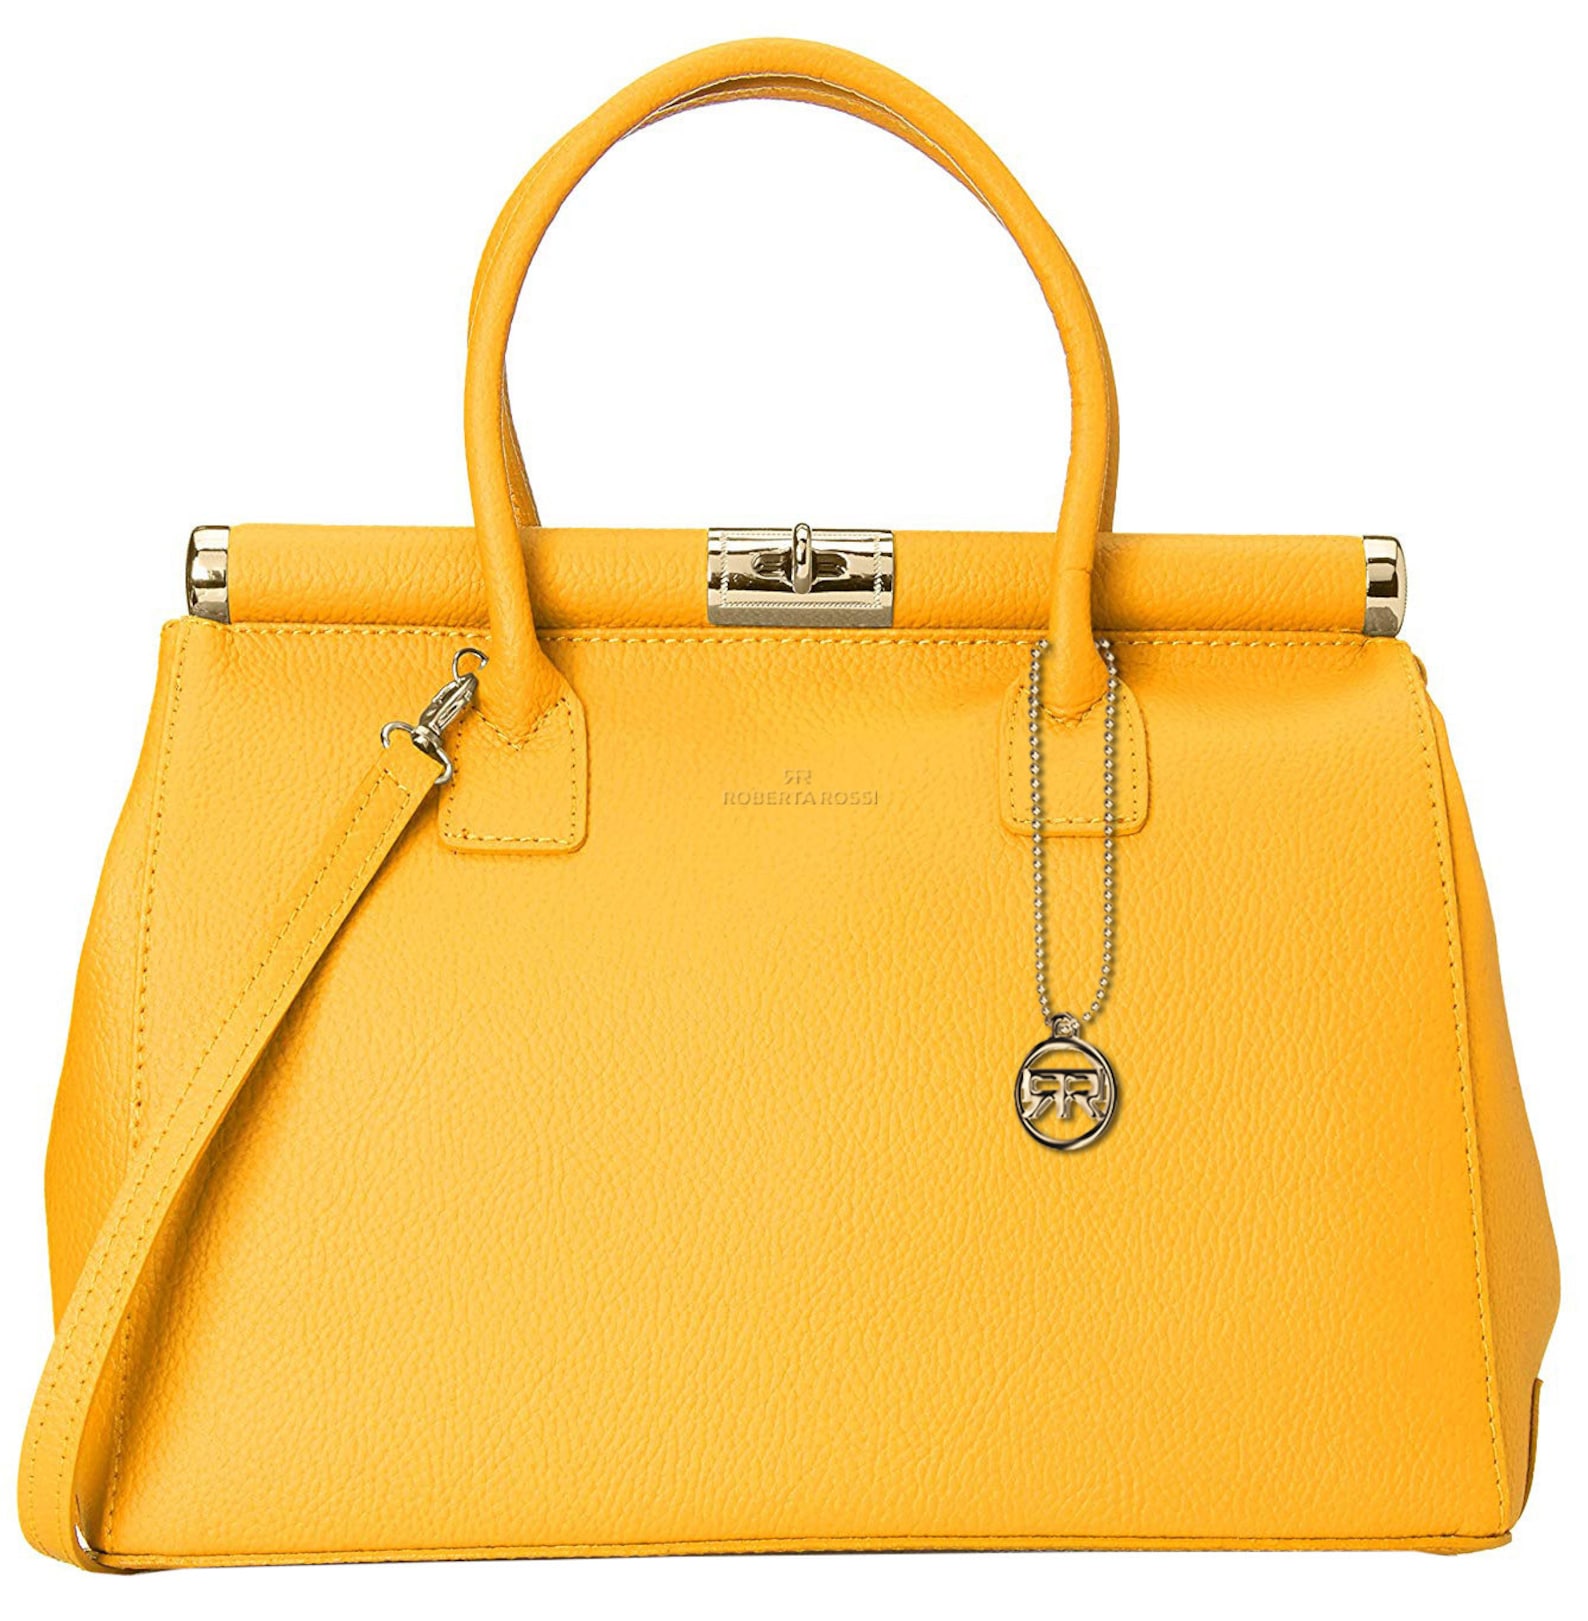 Roberta Rossi Handbag girl artisanal fashion casual Classic | Etsy